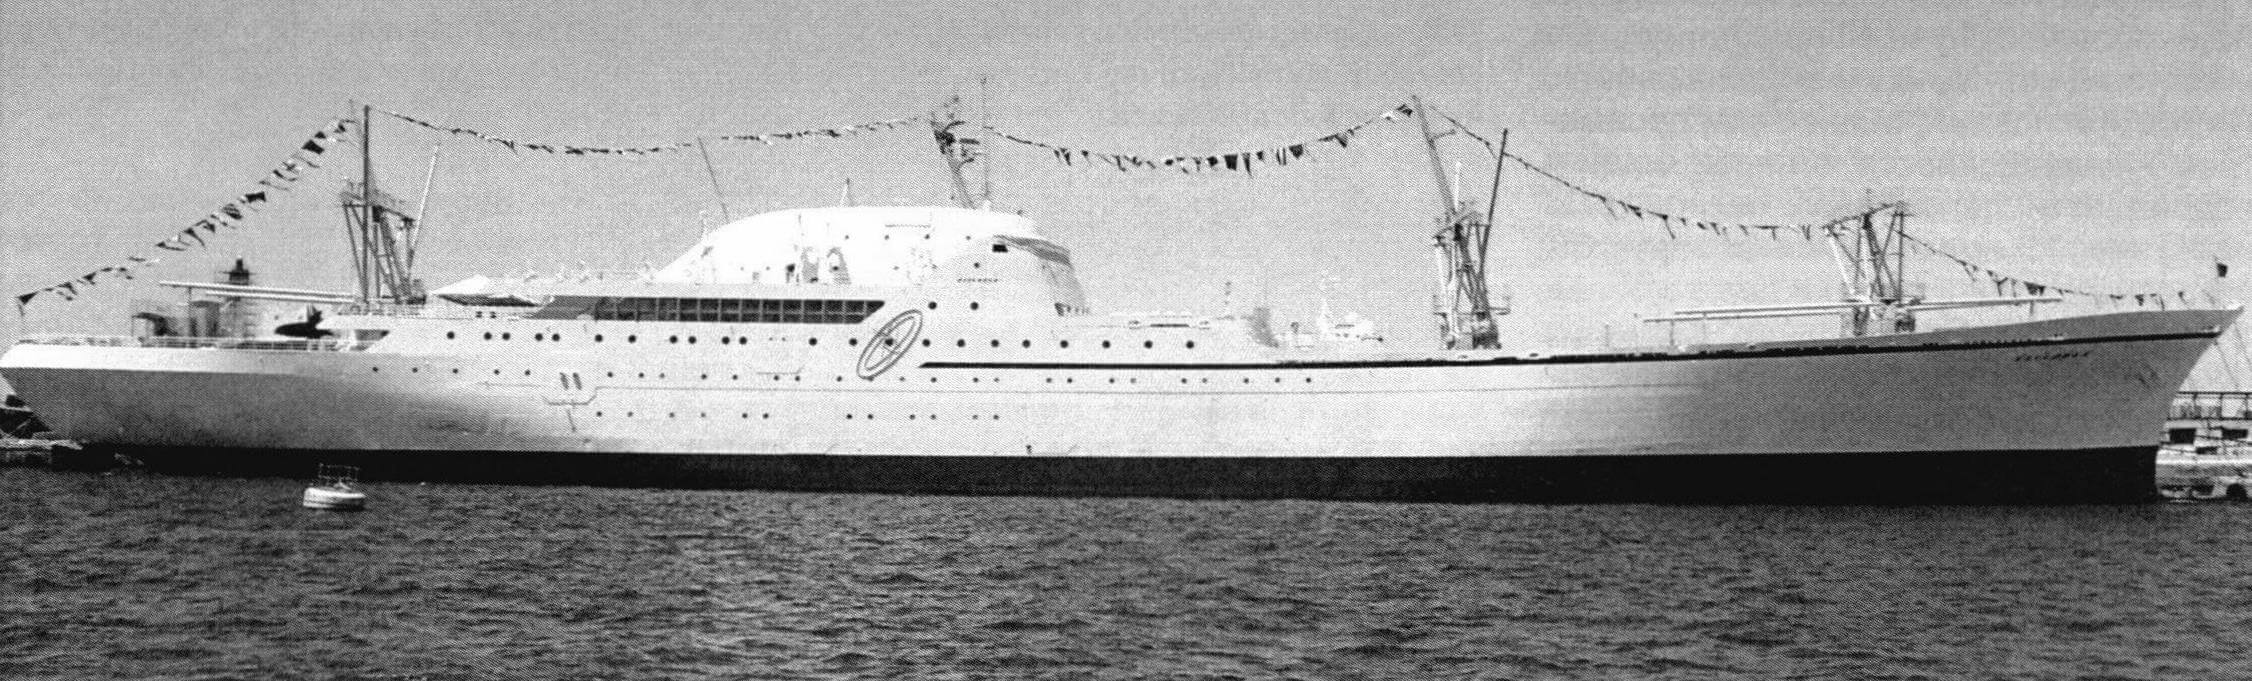 Грузопассажирский атомоход «Саванна» («Savannah») - первое и единственное судно с ядерной силовой установкой гражданского назначения, построенное в США